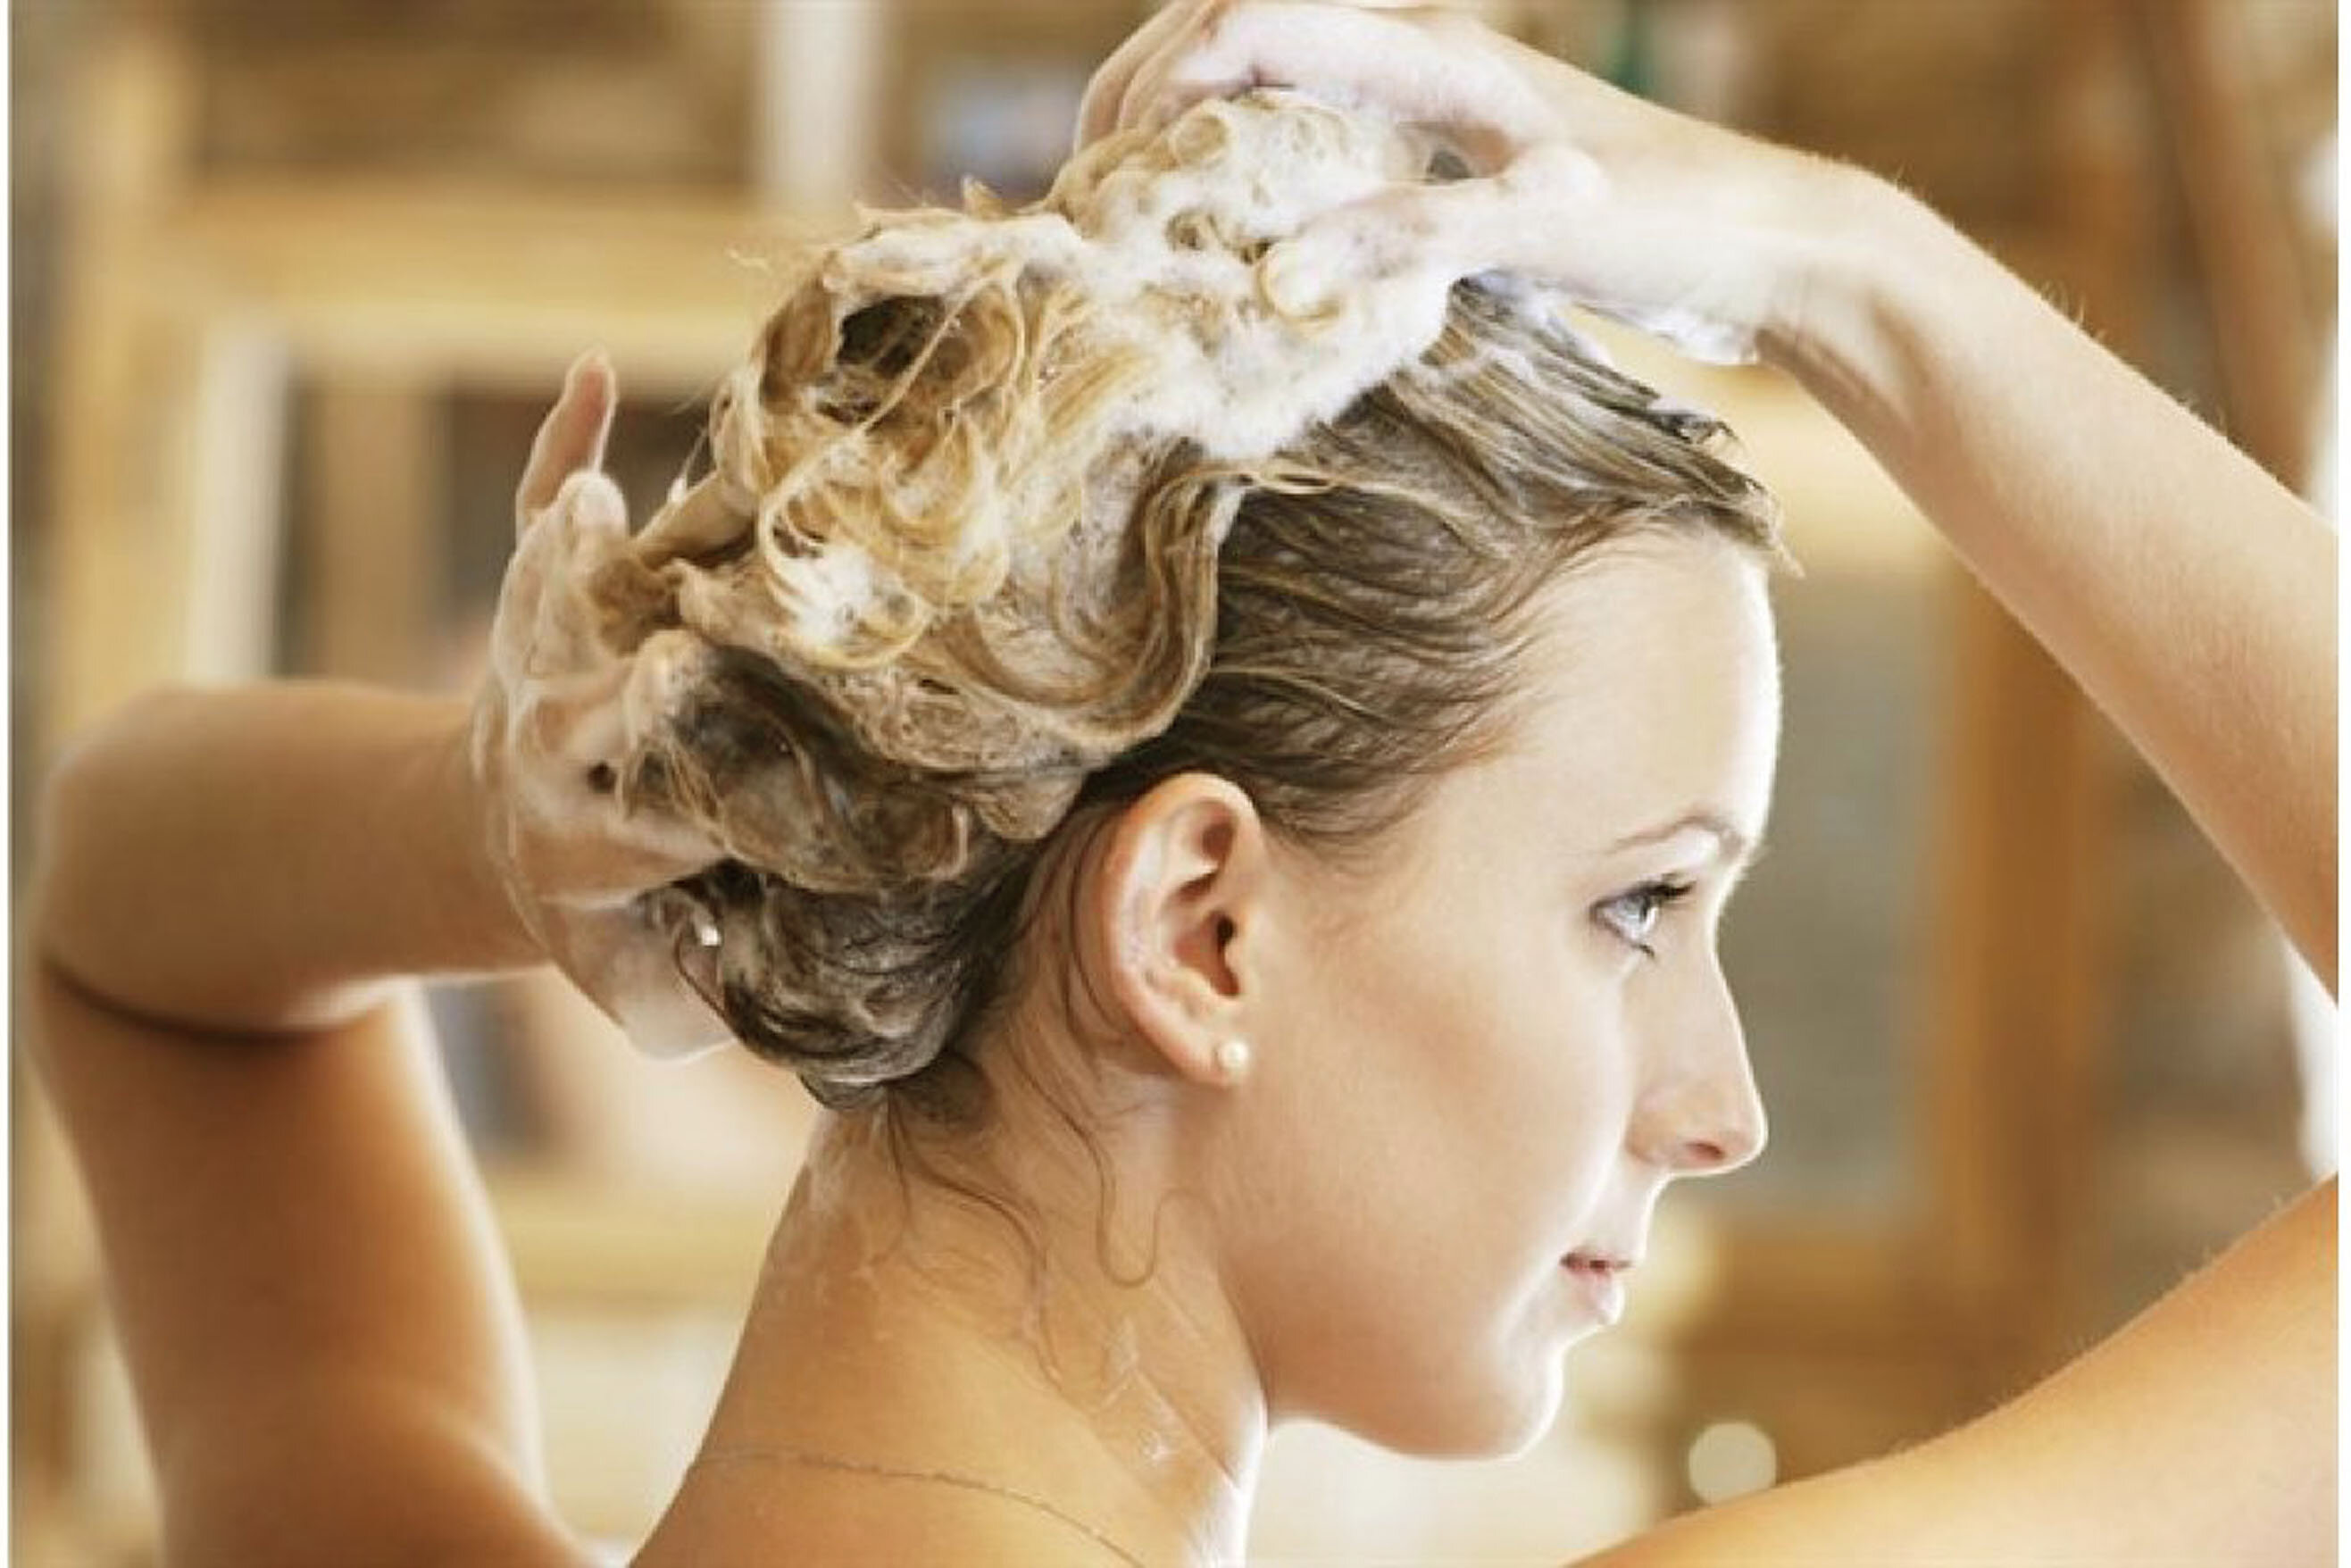 Massage nhẹ tóc và da đầu để tránh gãy rụng và mất nếp tóc uốn